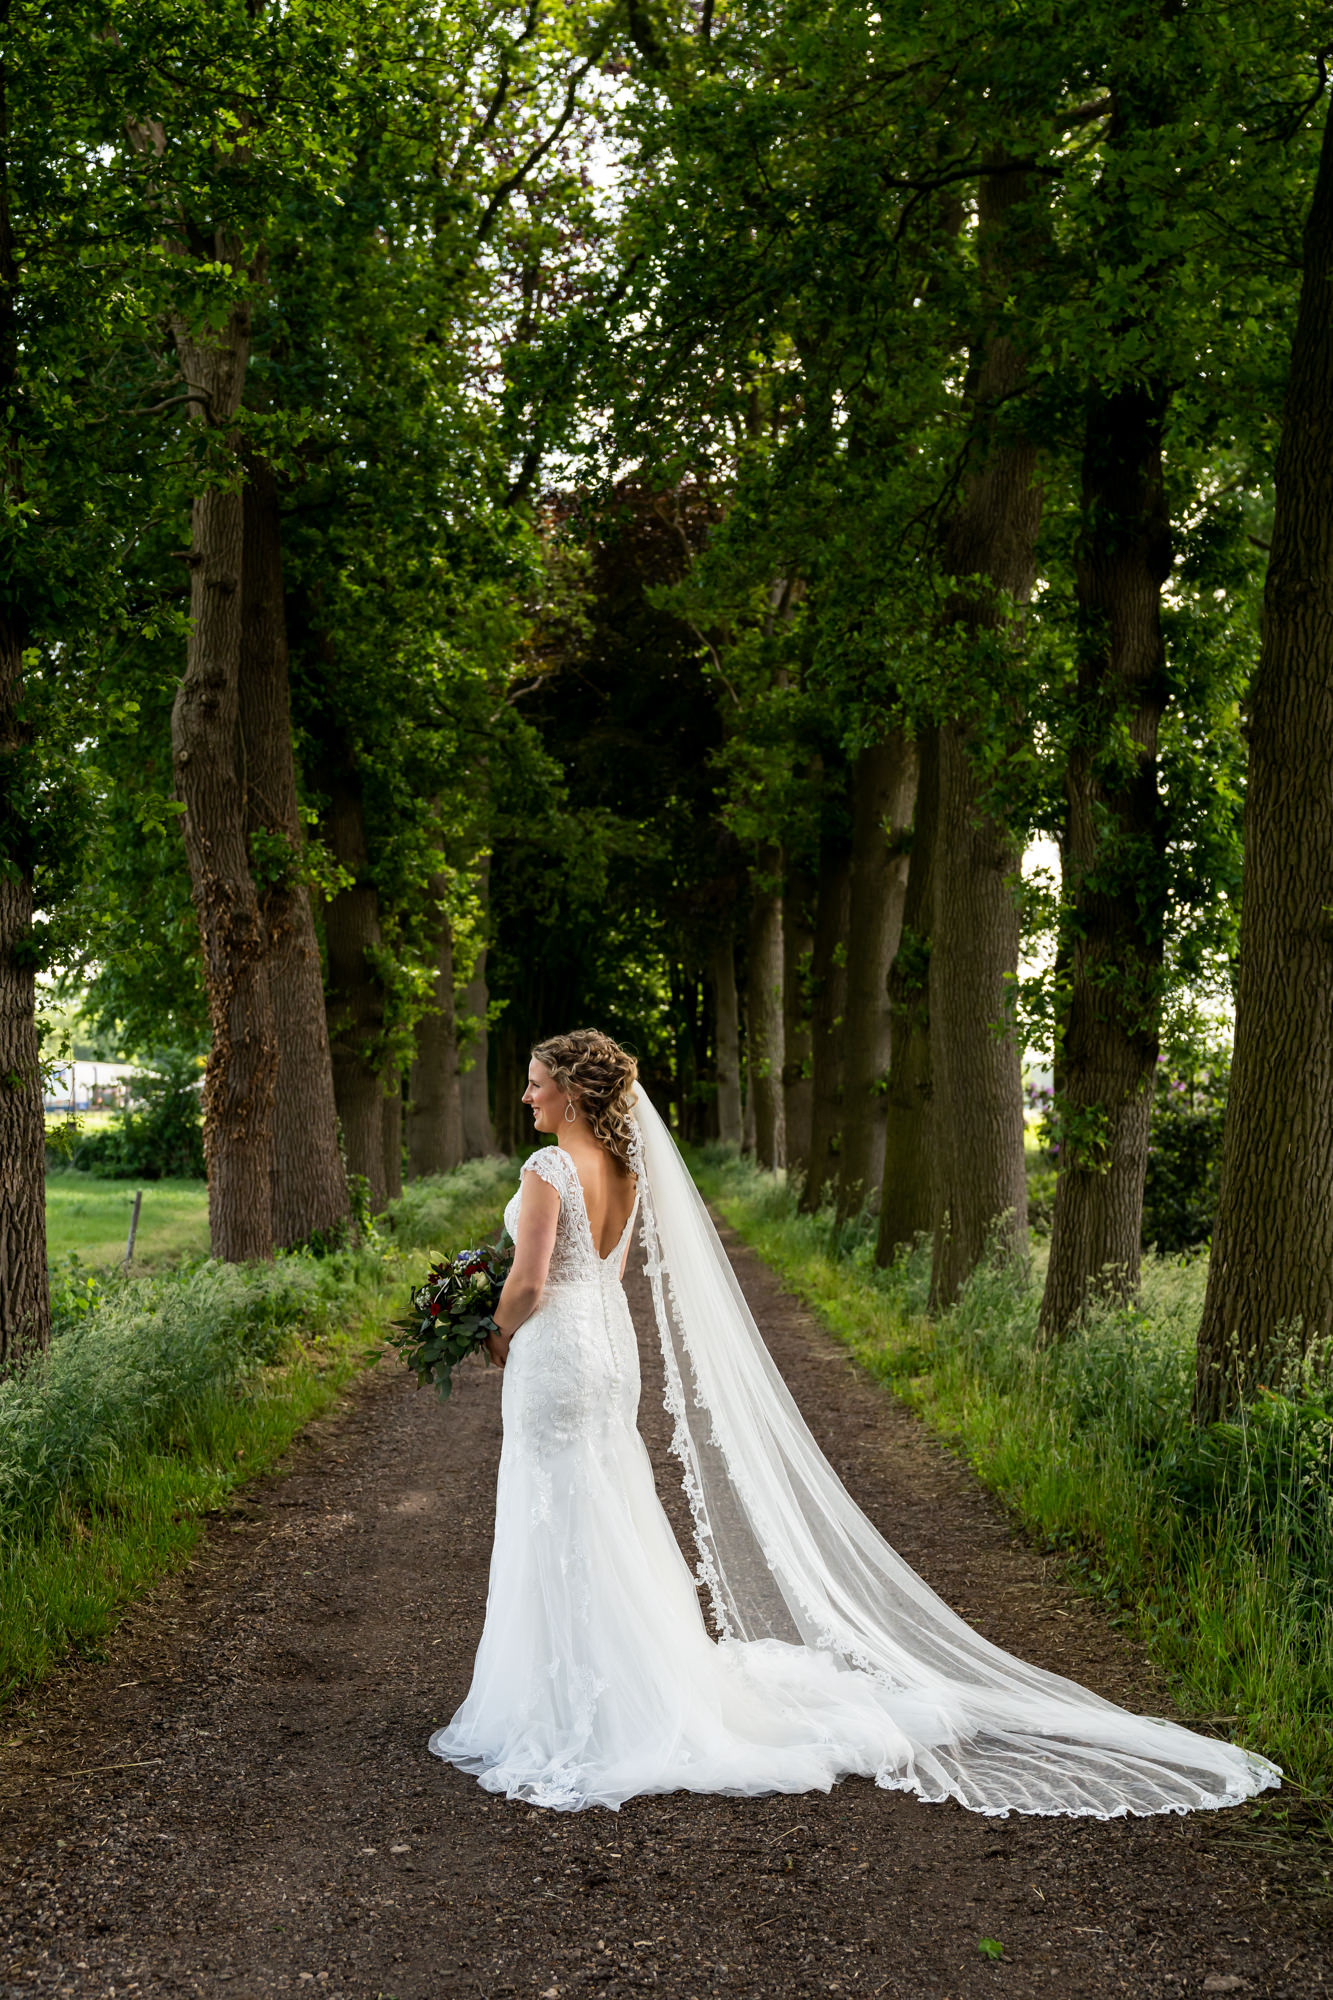 trouwen, trouwen in Twente, liefde, echt, momenten, fotograaf, trouwfotograaf, bruidsfotografie, echte momenten, buiten trouwen, thuis trouwen, in eigen tuin, juliantien fotografie, schipper fotograaf, fotoshoot, gewoon Marrie bloemen,